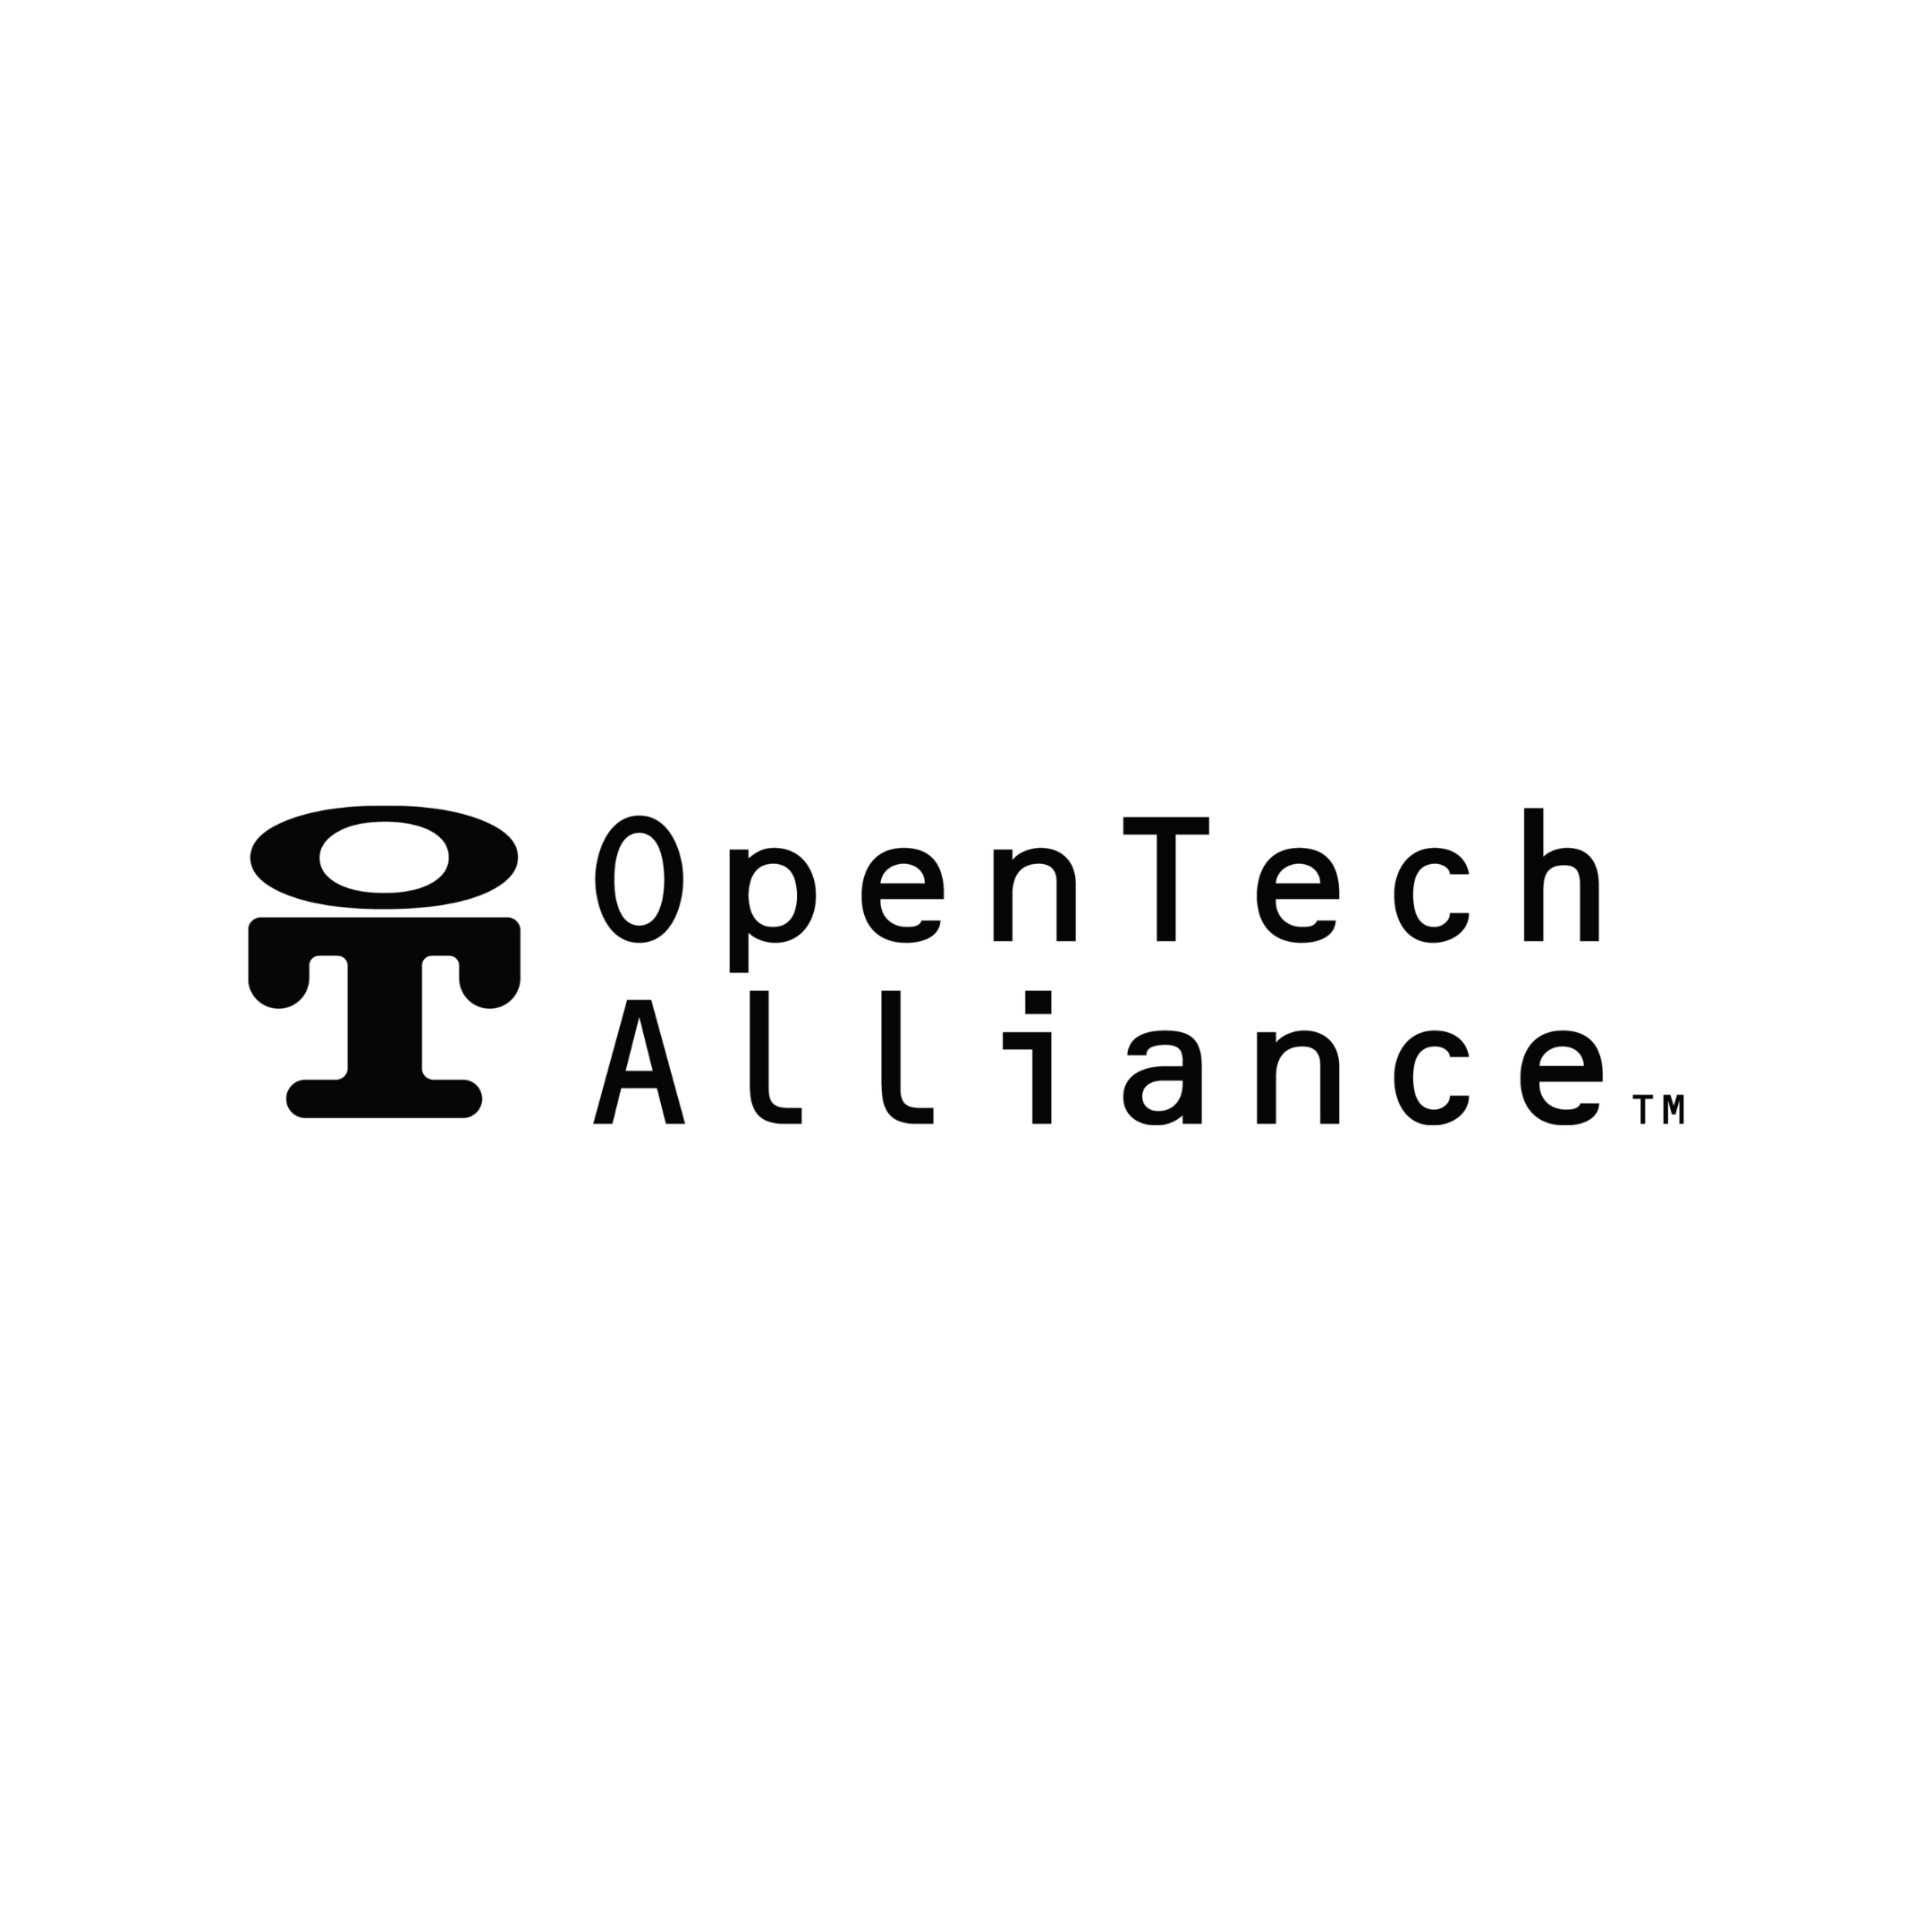 OpenTech Alliance